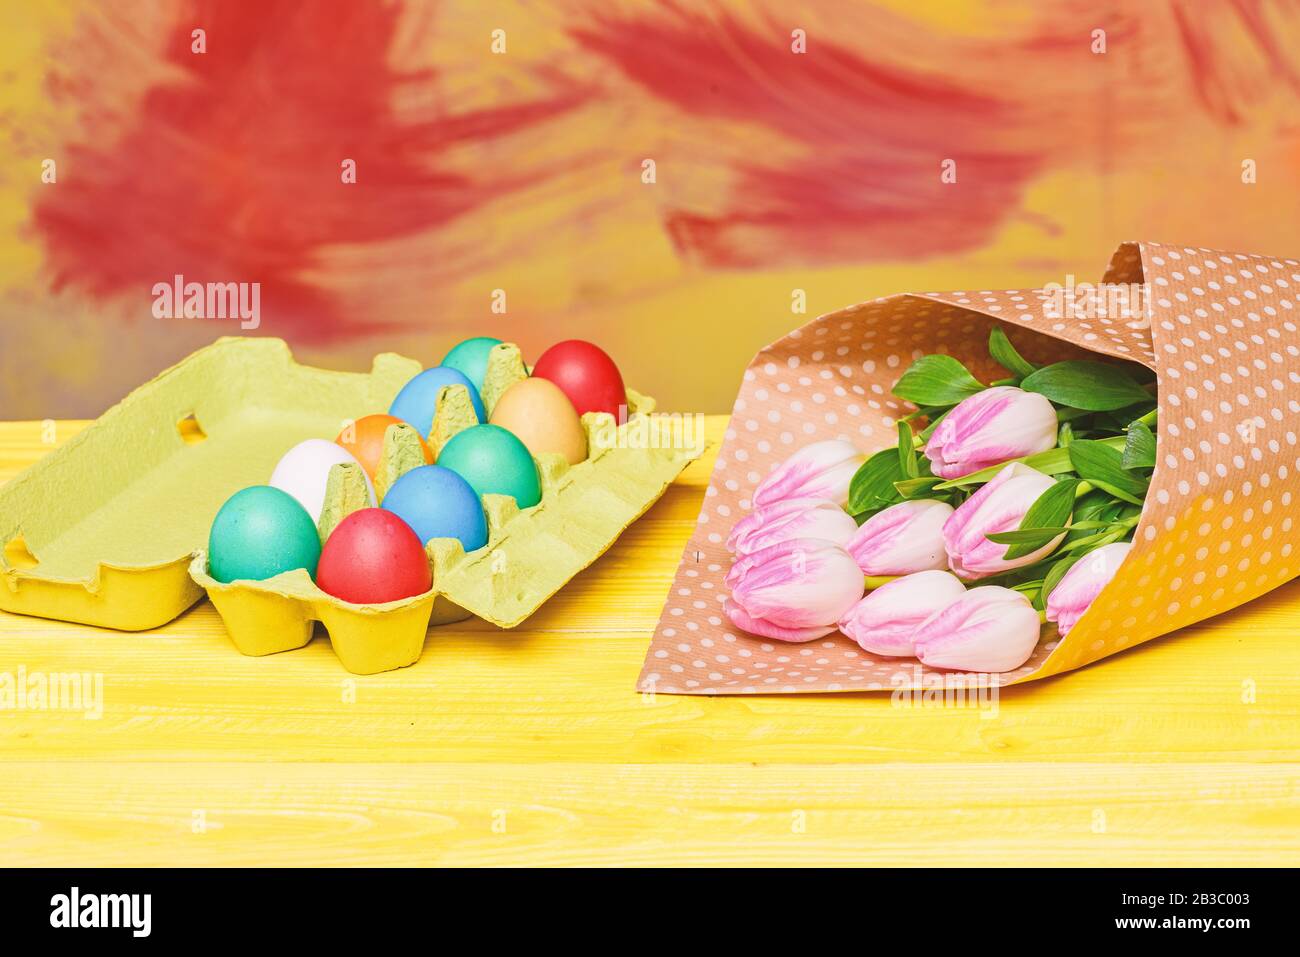 Eierjagd. Bemalte Eier in Eierschale Frühlingsurlaub. Feiertagsfeier, Vorbereitung. Blumenstrauß der Tulpe. Gesunder und glücklicher Urlaub. Frohe ostern. Osterzeit. Stockfoto